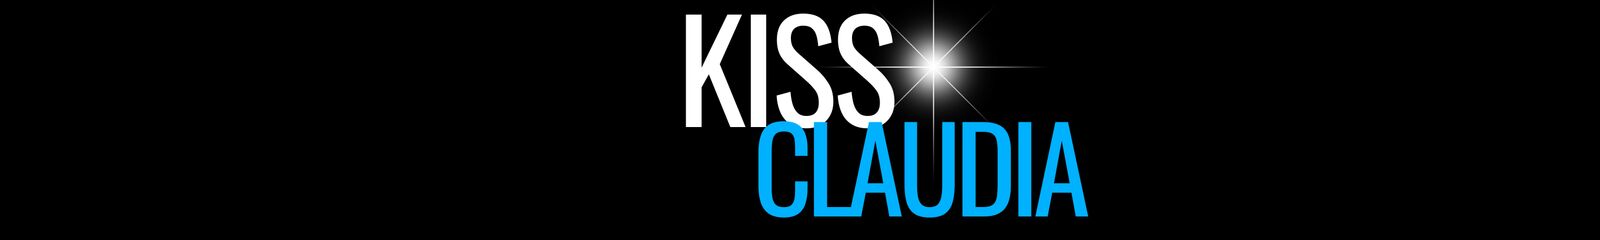 Kiss Claudia